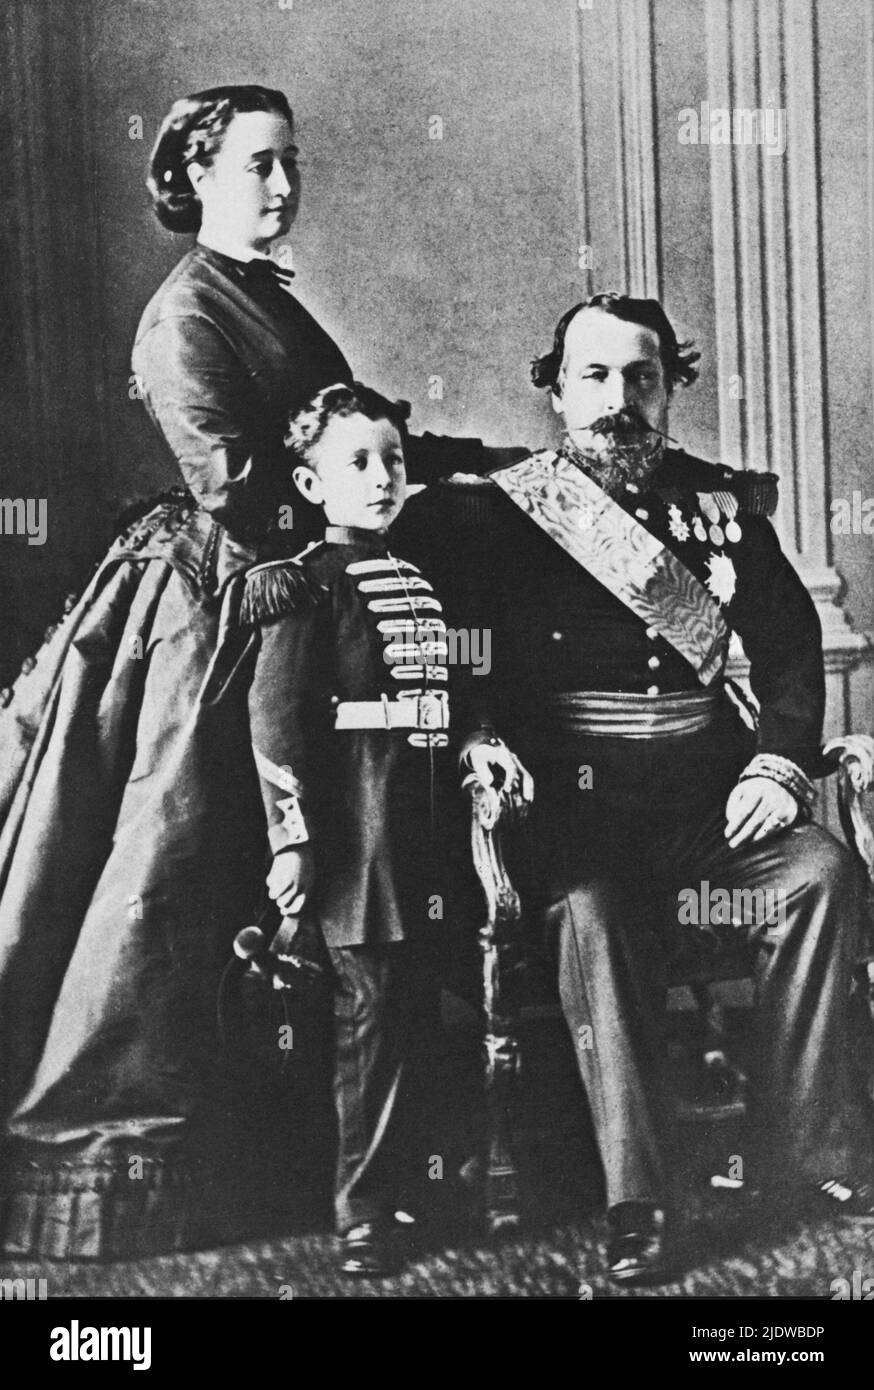 1865 ca., FRANCIA : l'imperatore francese NAPOLEONE III ( 1808 - 1873 , figlio di Luigi BONAPARTE e Ortensia Beauharnais ) con la moglie Imperatrice Eugénie ( Eugenia de Montijo de Guzman - 1826 - 1920 ) e figlio del Principe Imperiale Eugéne Louis Napoléon ( 1856 - 1879 ). - REALI - royalty - nobili - nobiltà - Napoleone III - imperatrice - imperatore - baffi - baffi - ritratto - baffi - baffi - barba - barba - barba - medaglia - medaglie - medaglie - decorazioni militari - RISORGIMENTO - famiglia - famiglia - famiglia - Padre madre e figlio - Mamma e cameriera ---- Archivio GBB Foto Stock